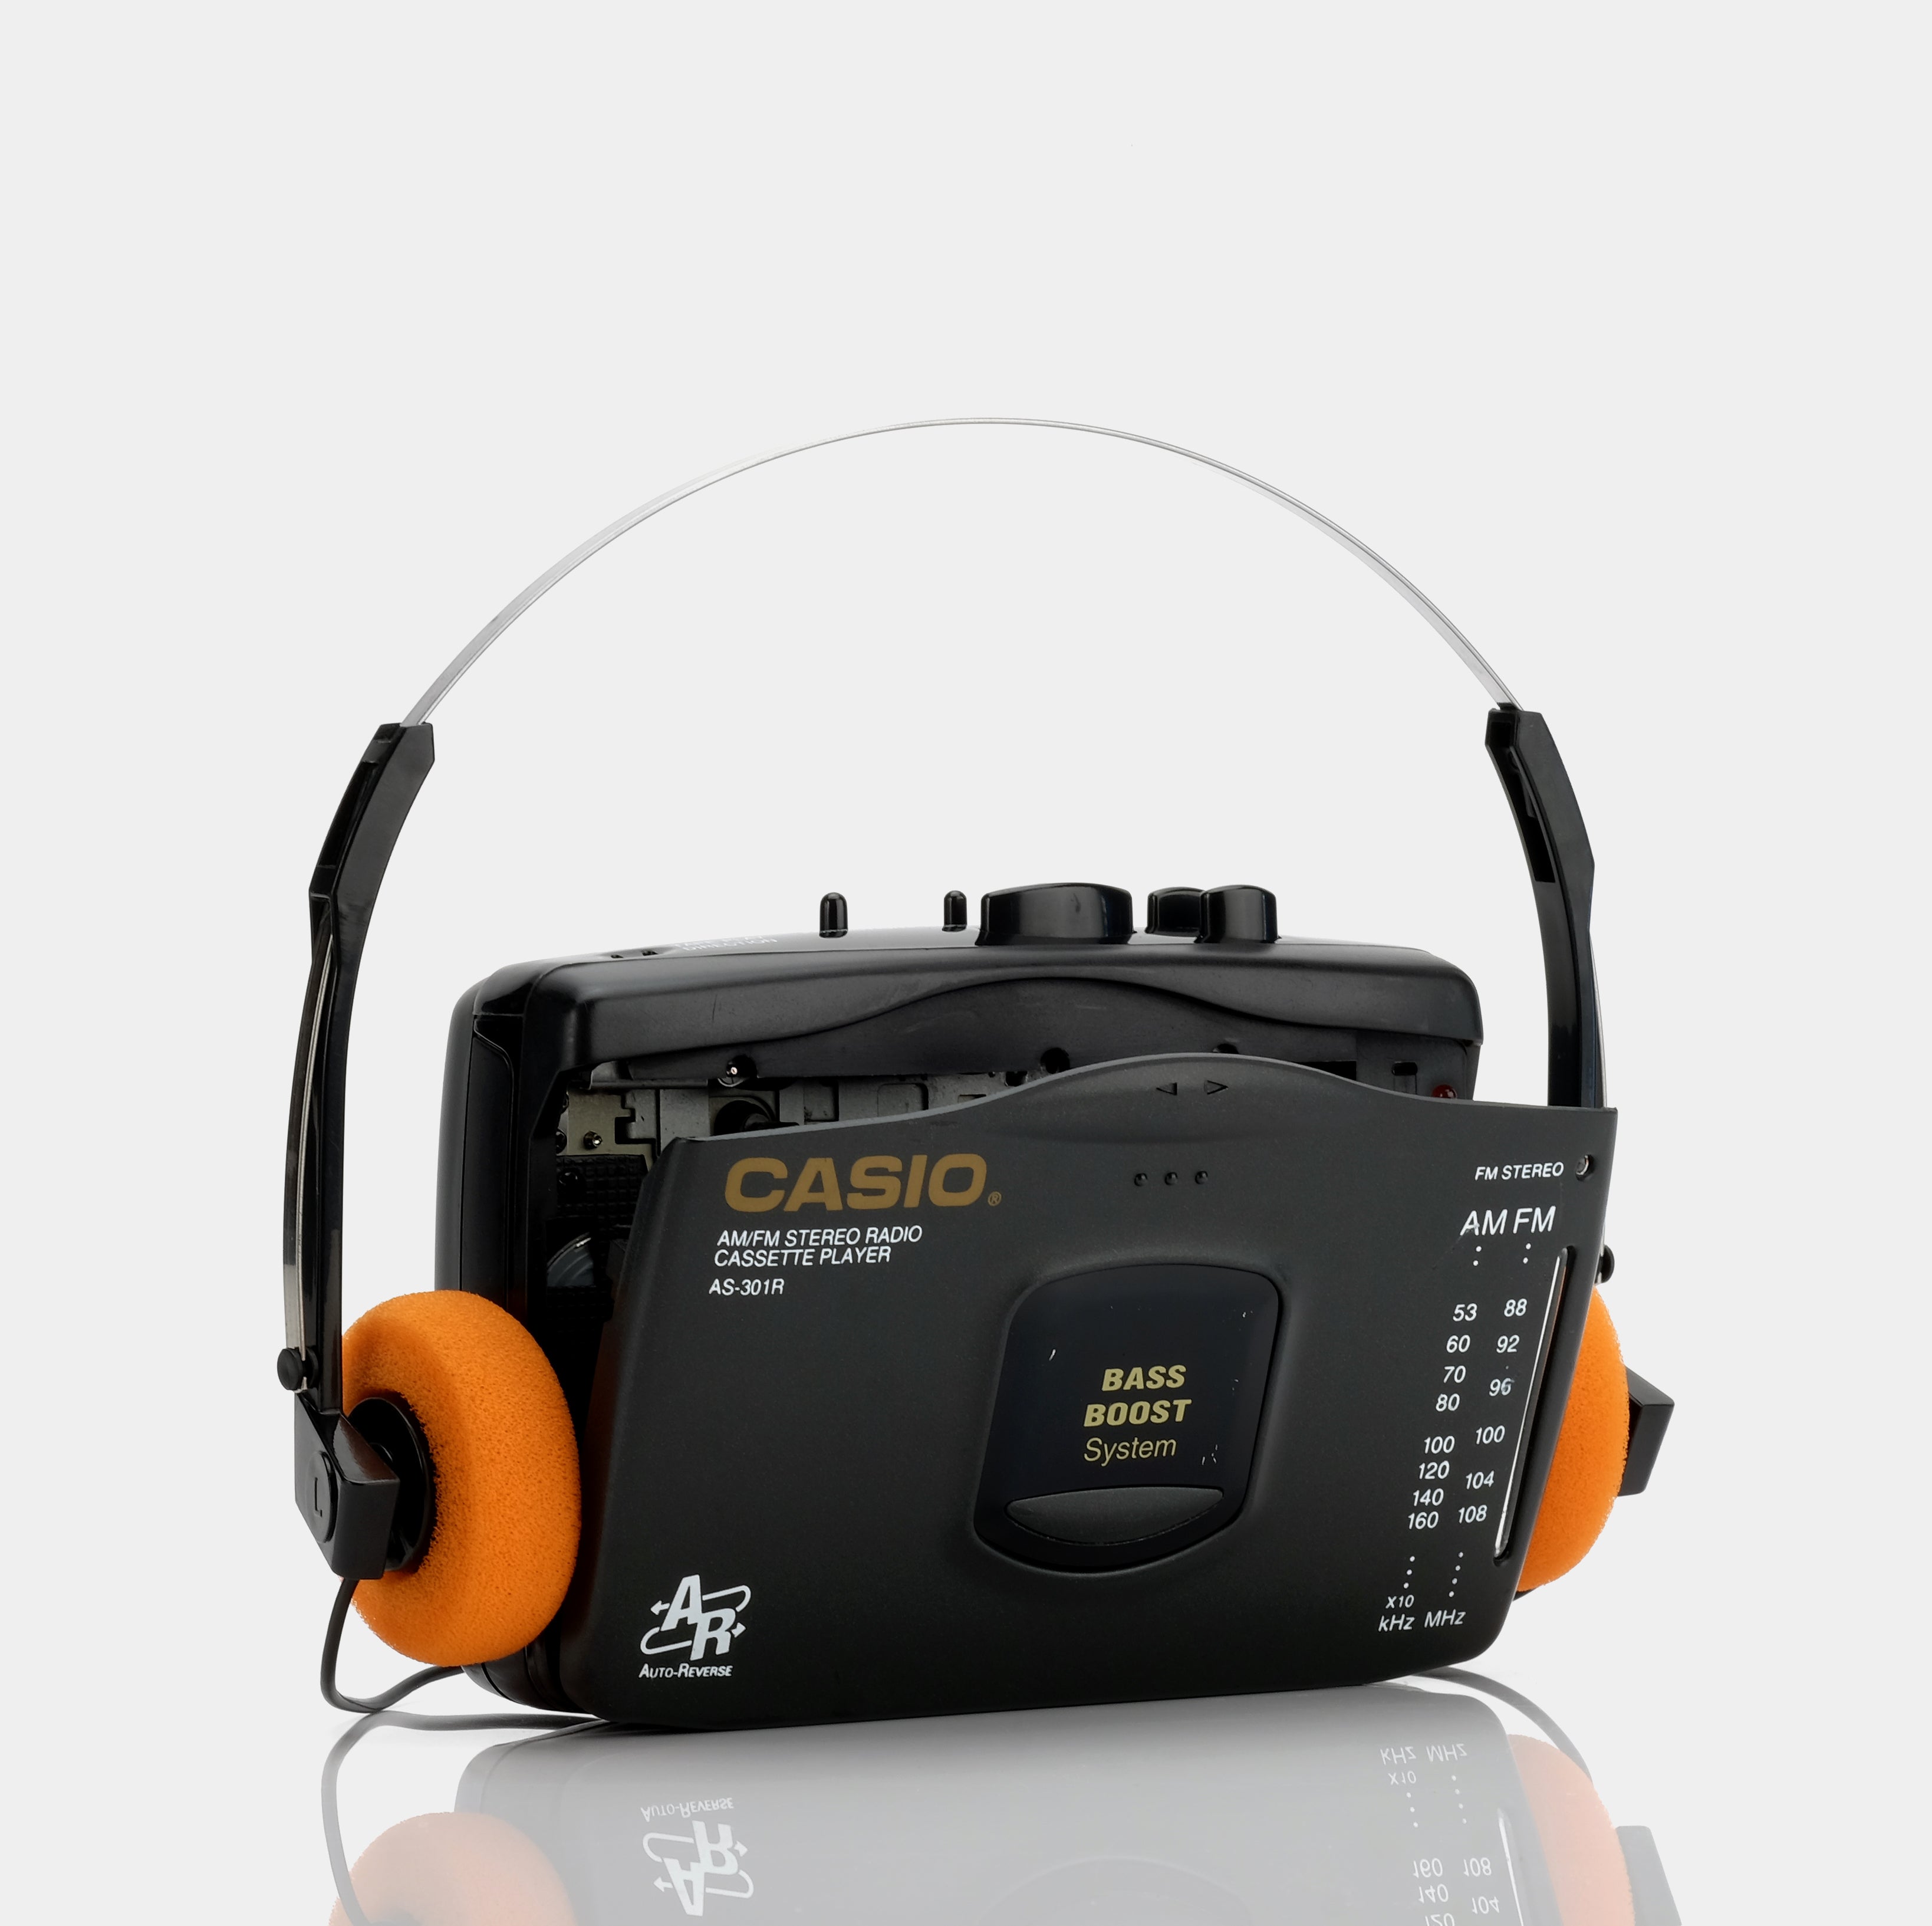 Casio AS-301R AM/FM Portable Cassette Player